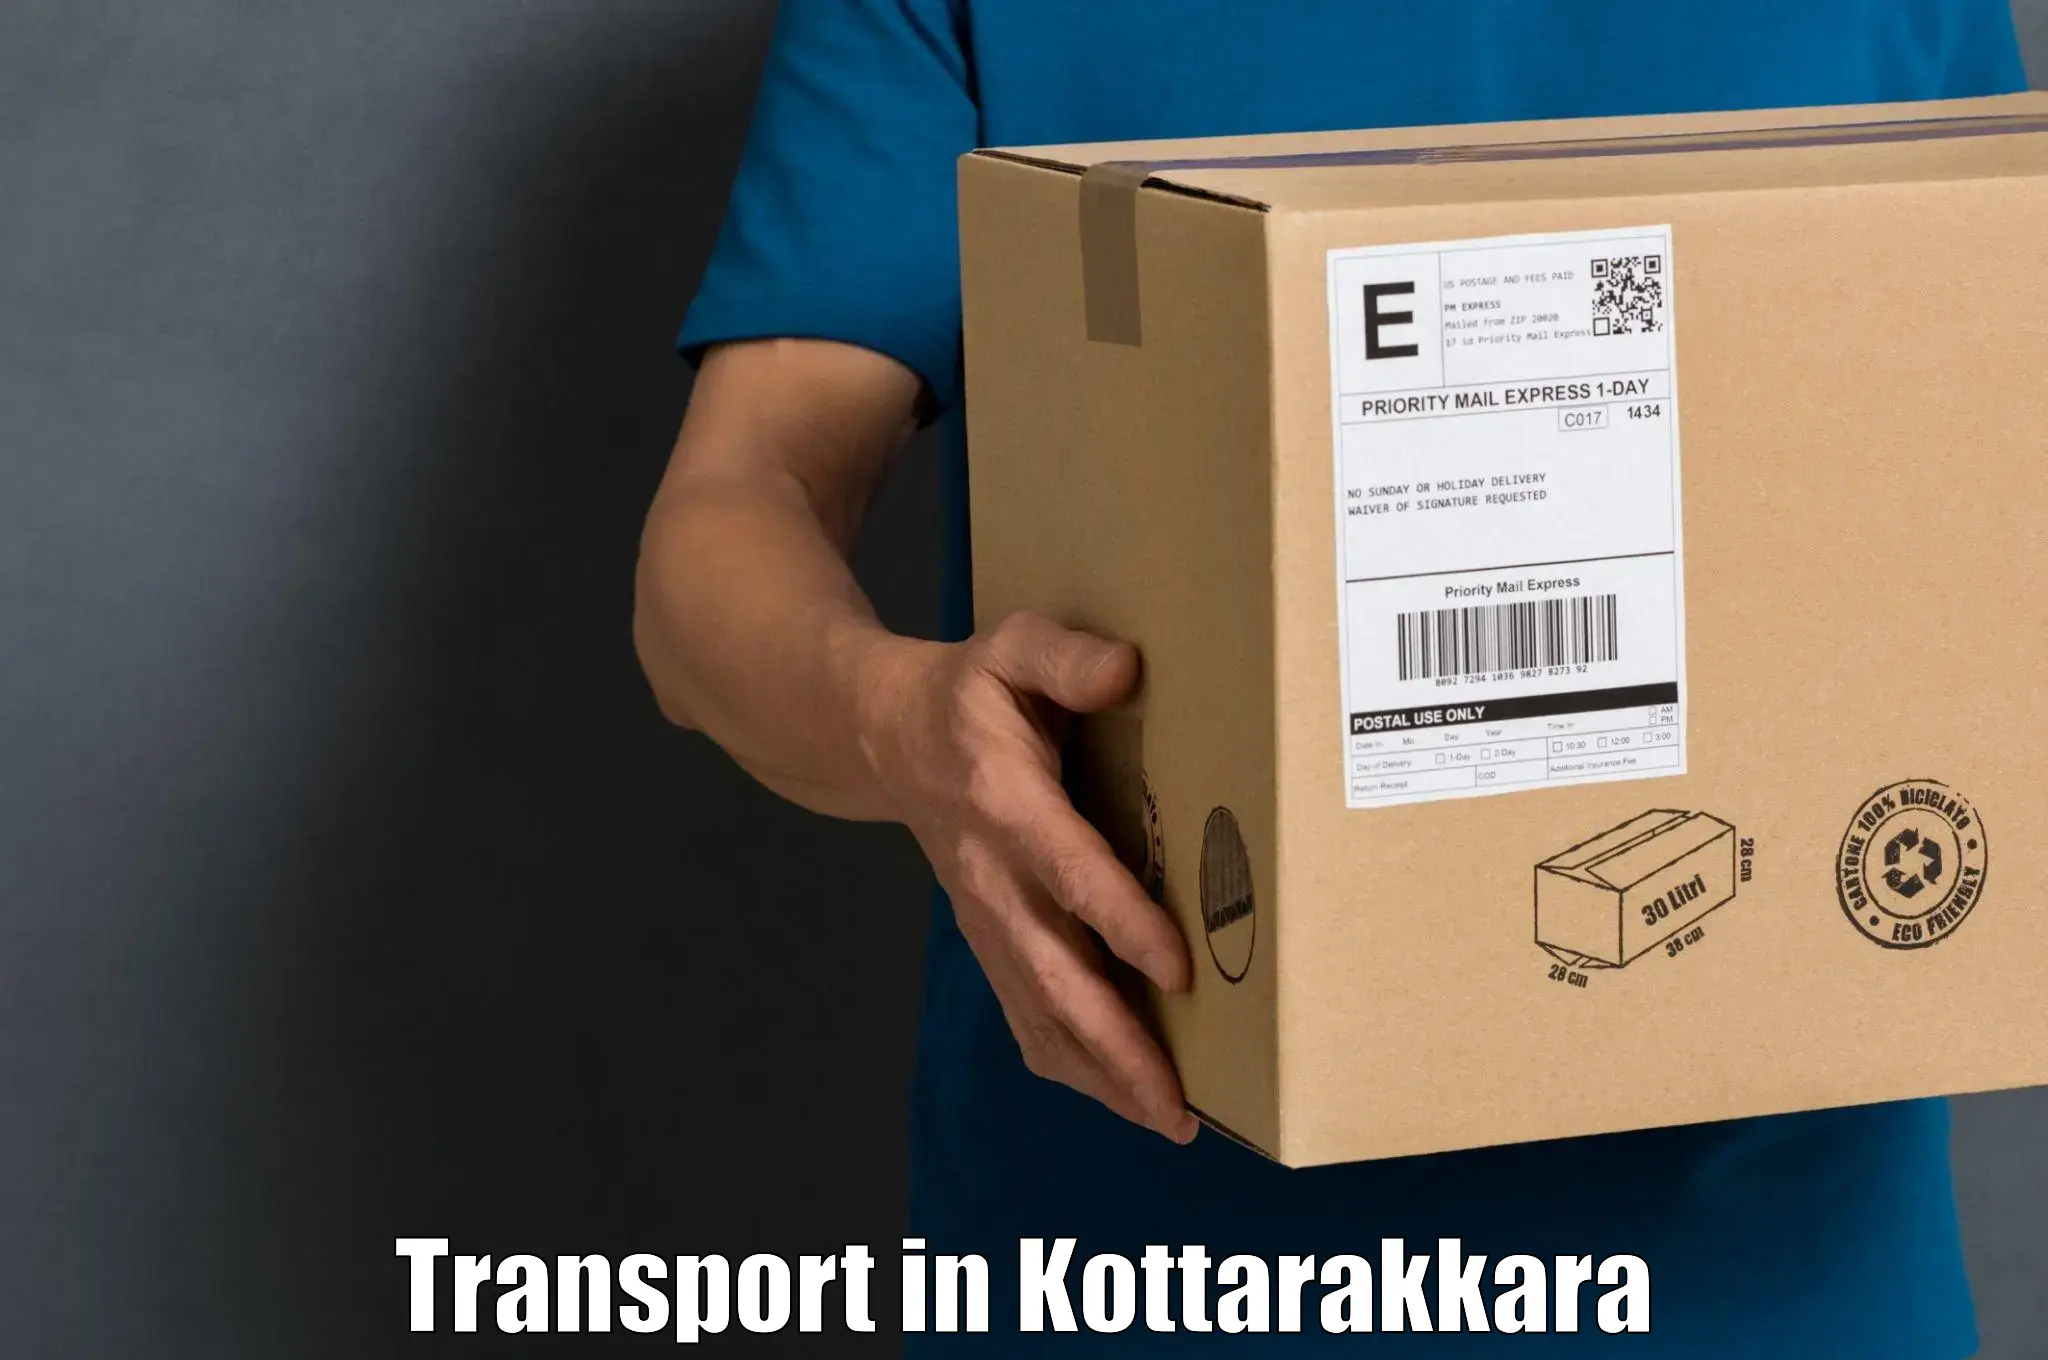 Truck transport companies in India in Kottarakkara